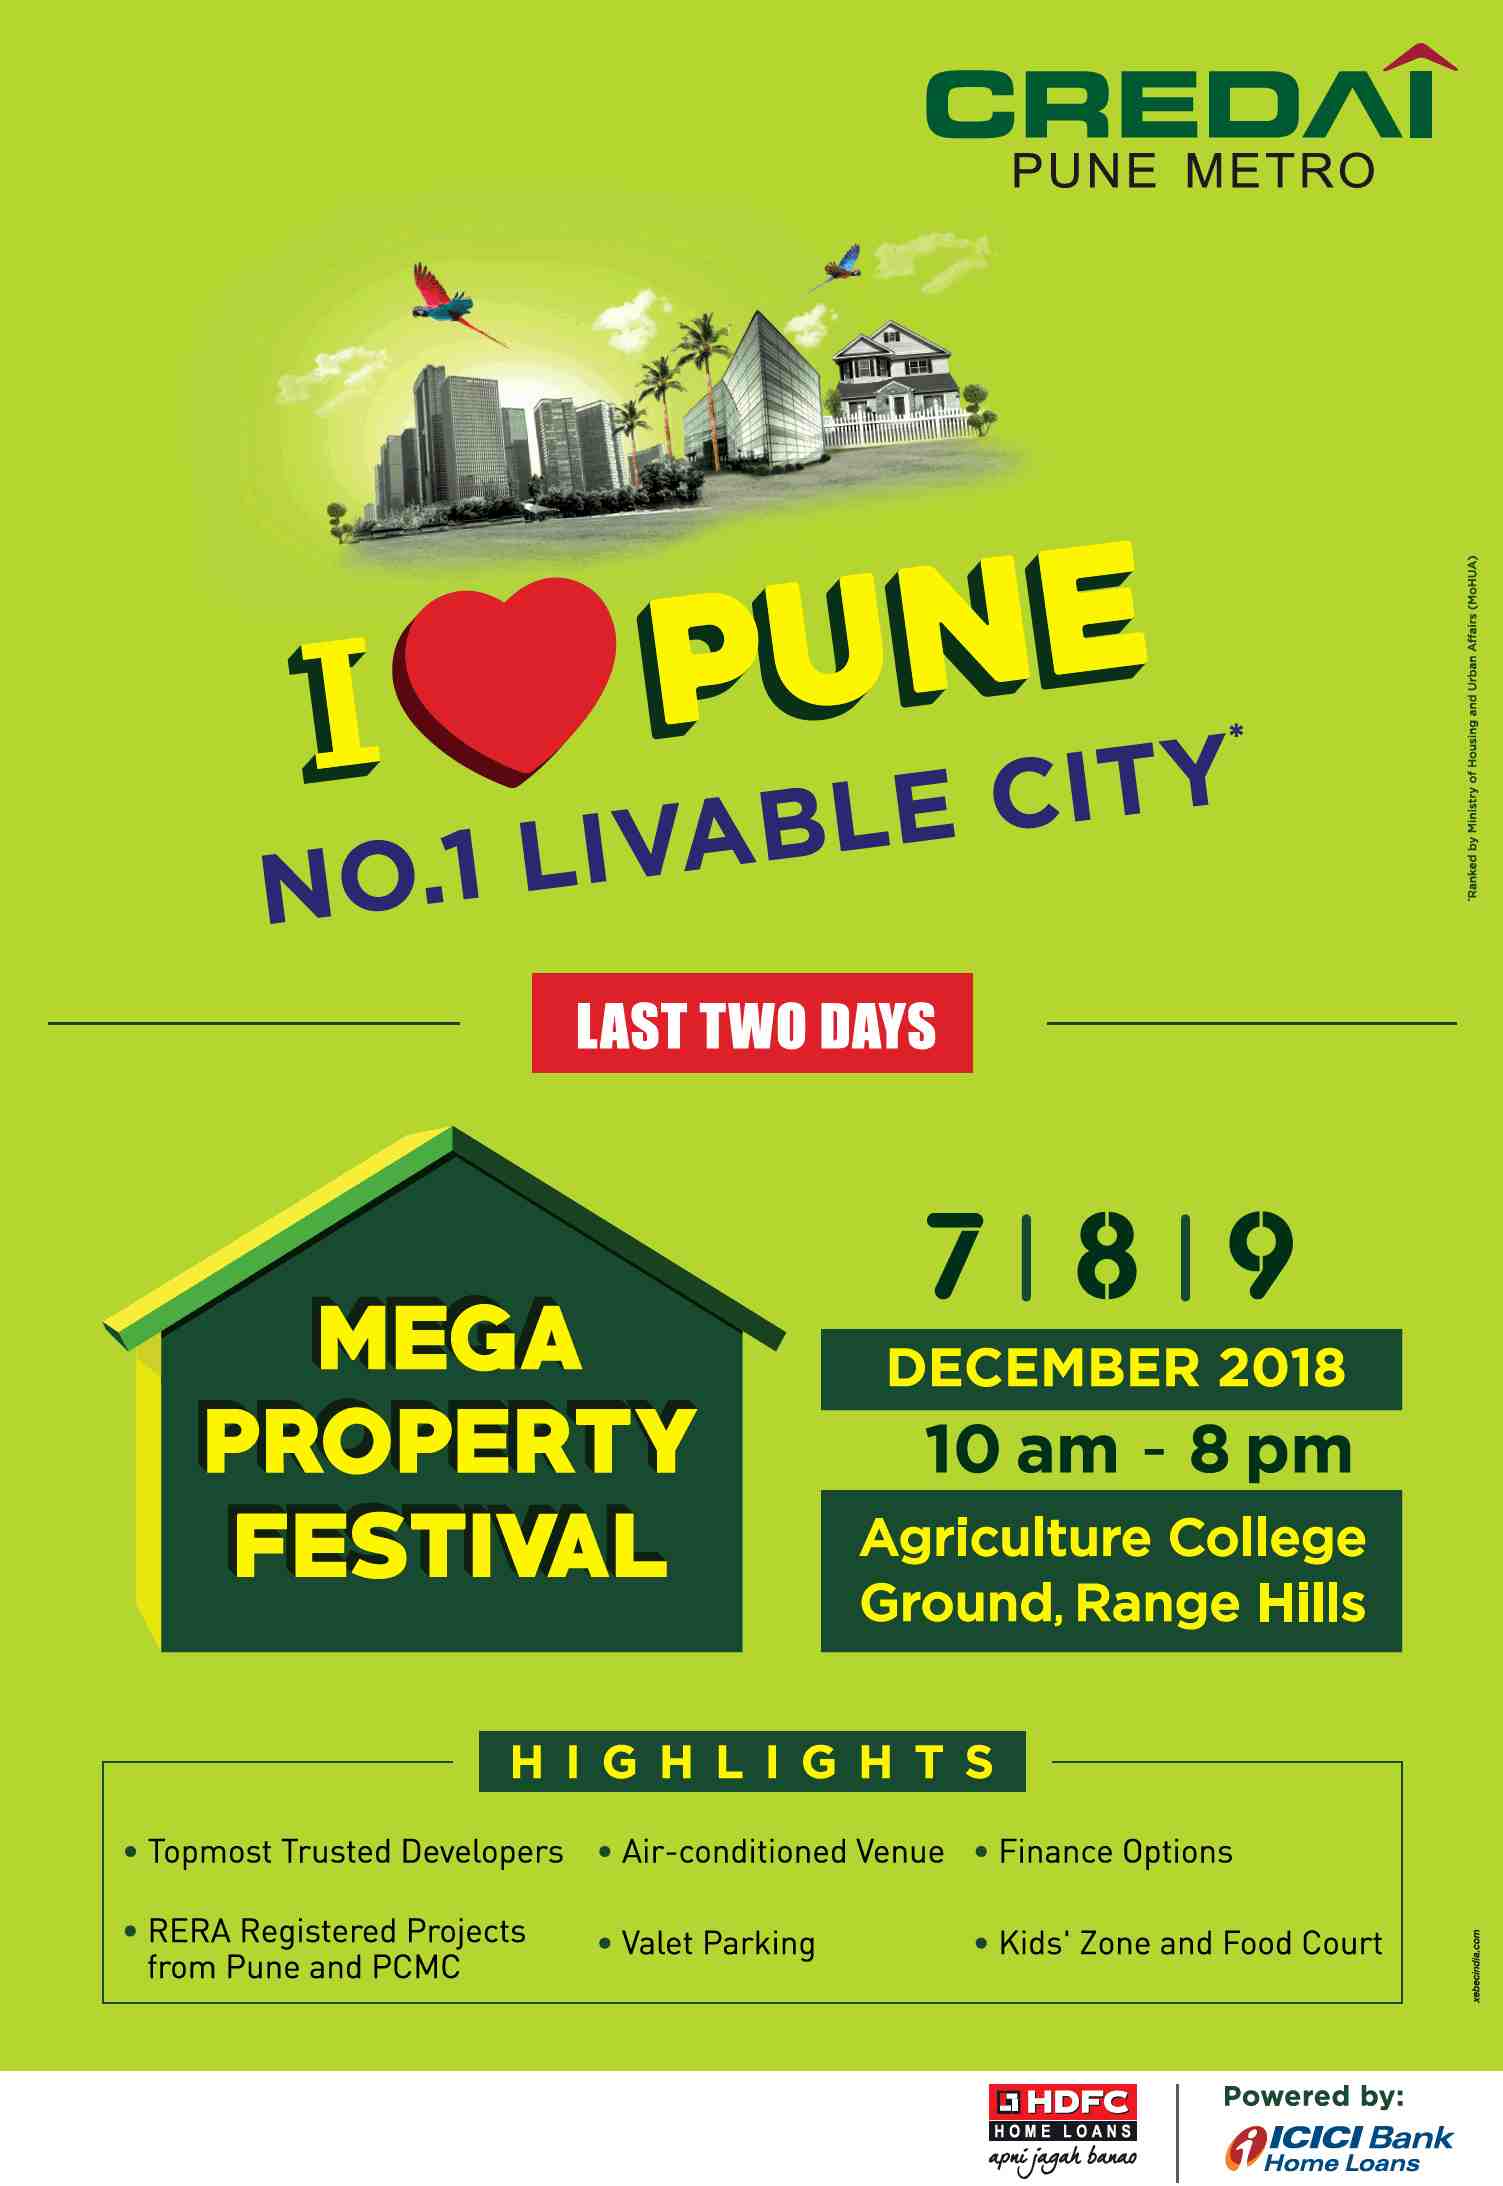 CREDAI presents Mega Property Festival 2018 in Pune Update